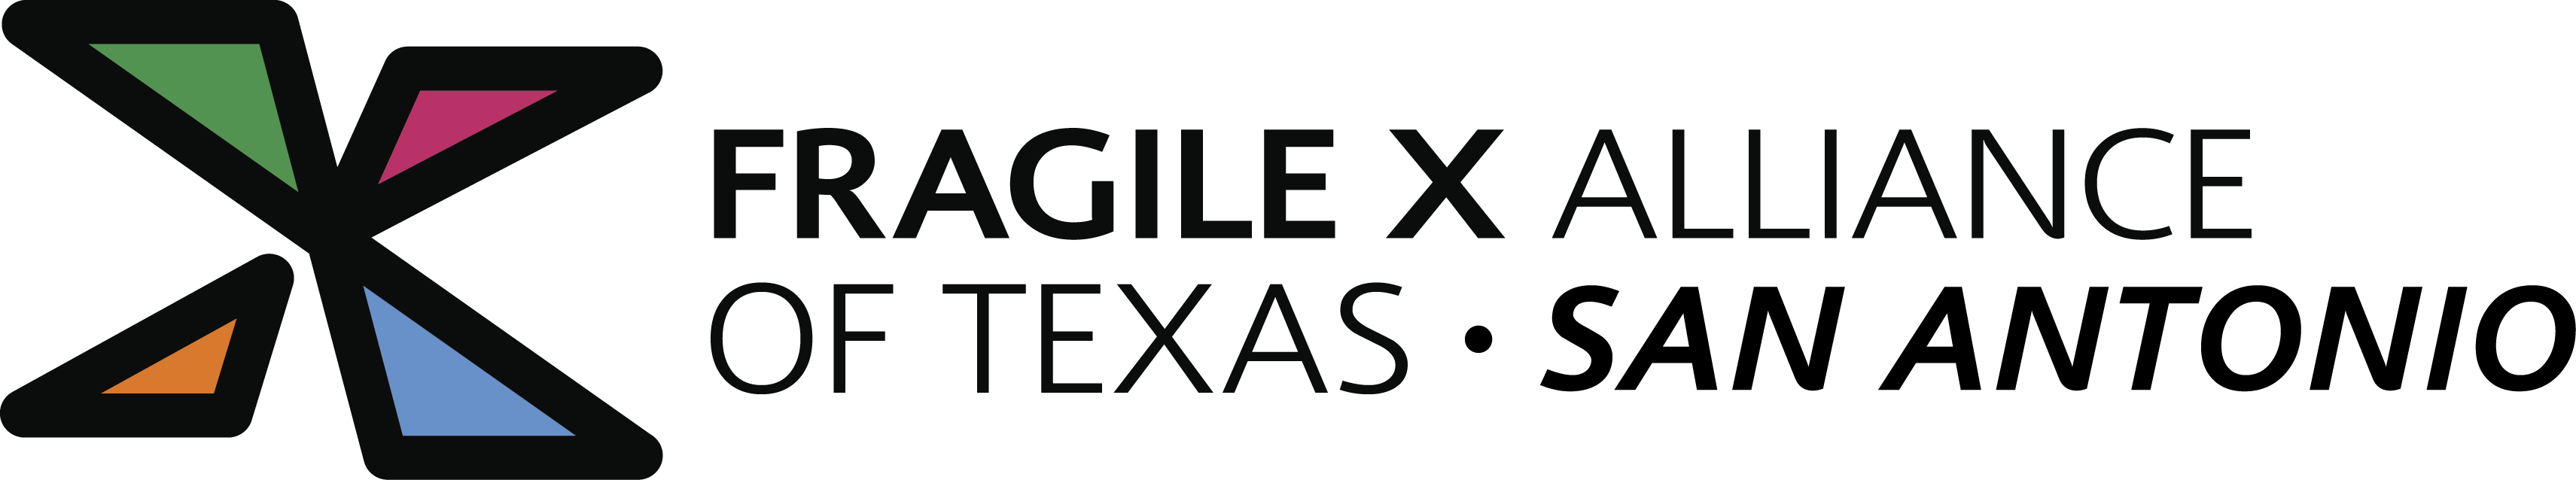 Fragile X Alliance of Texas - San Antonio logo